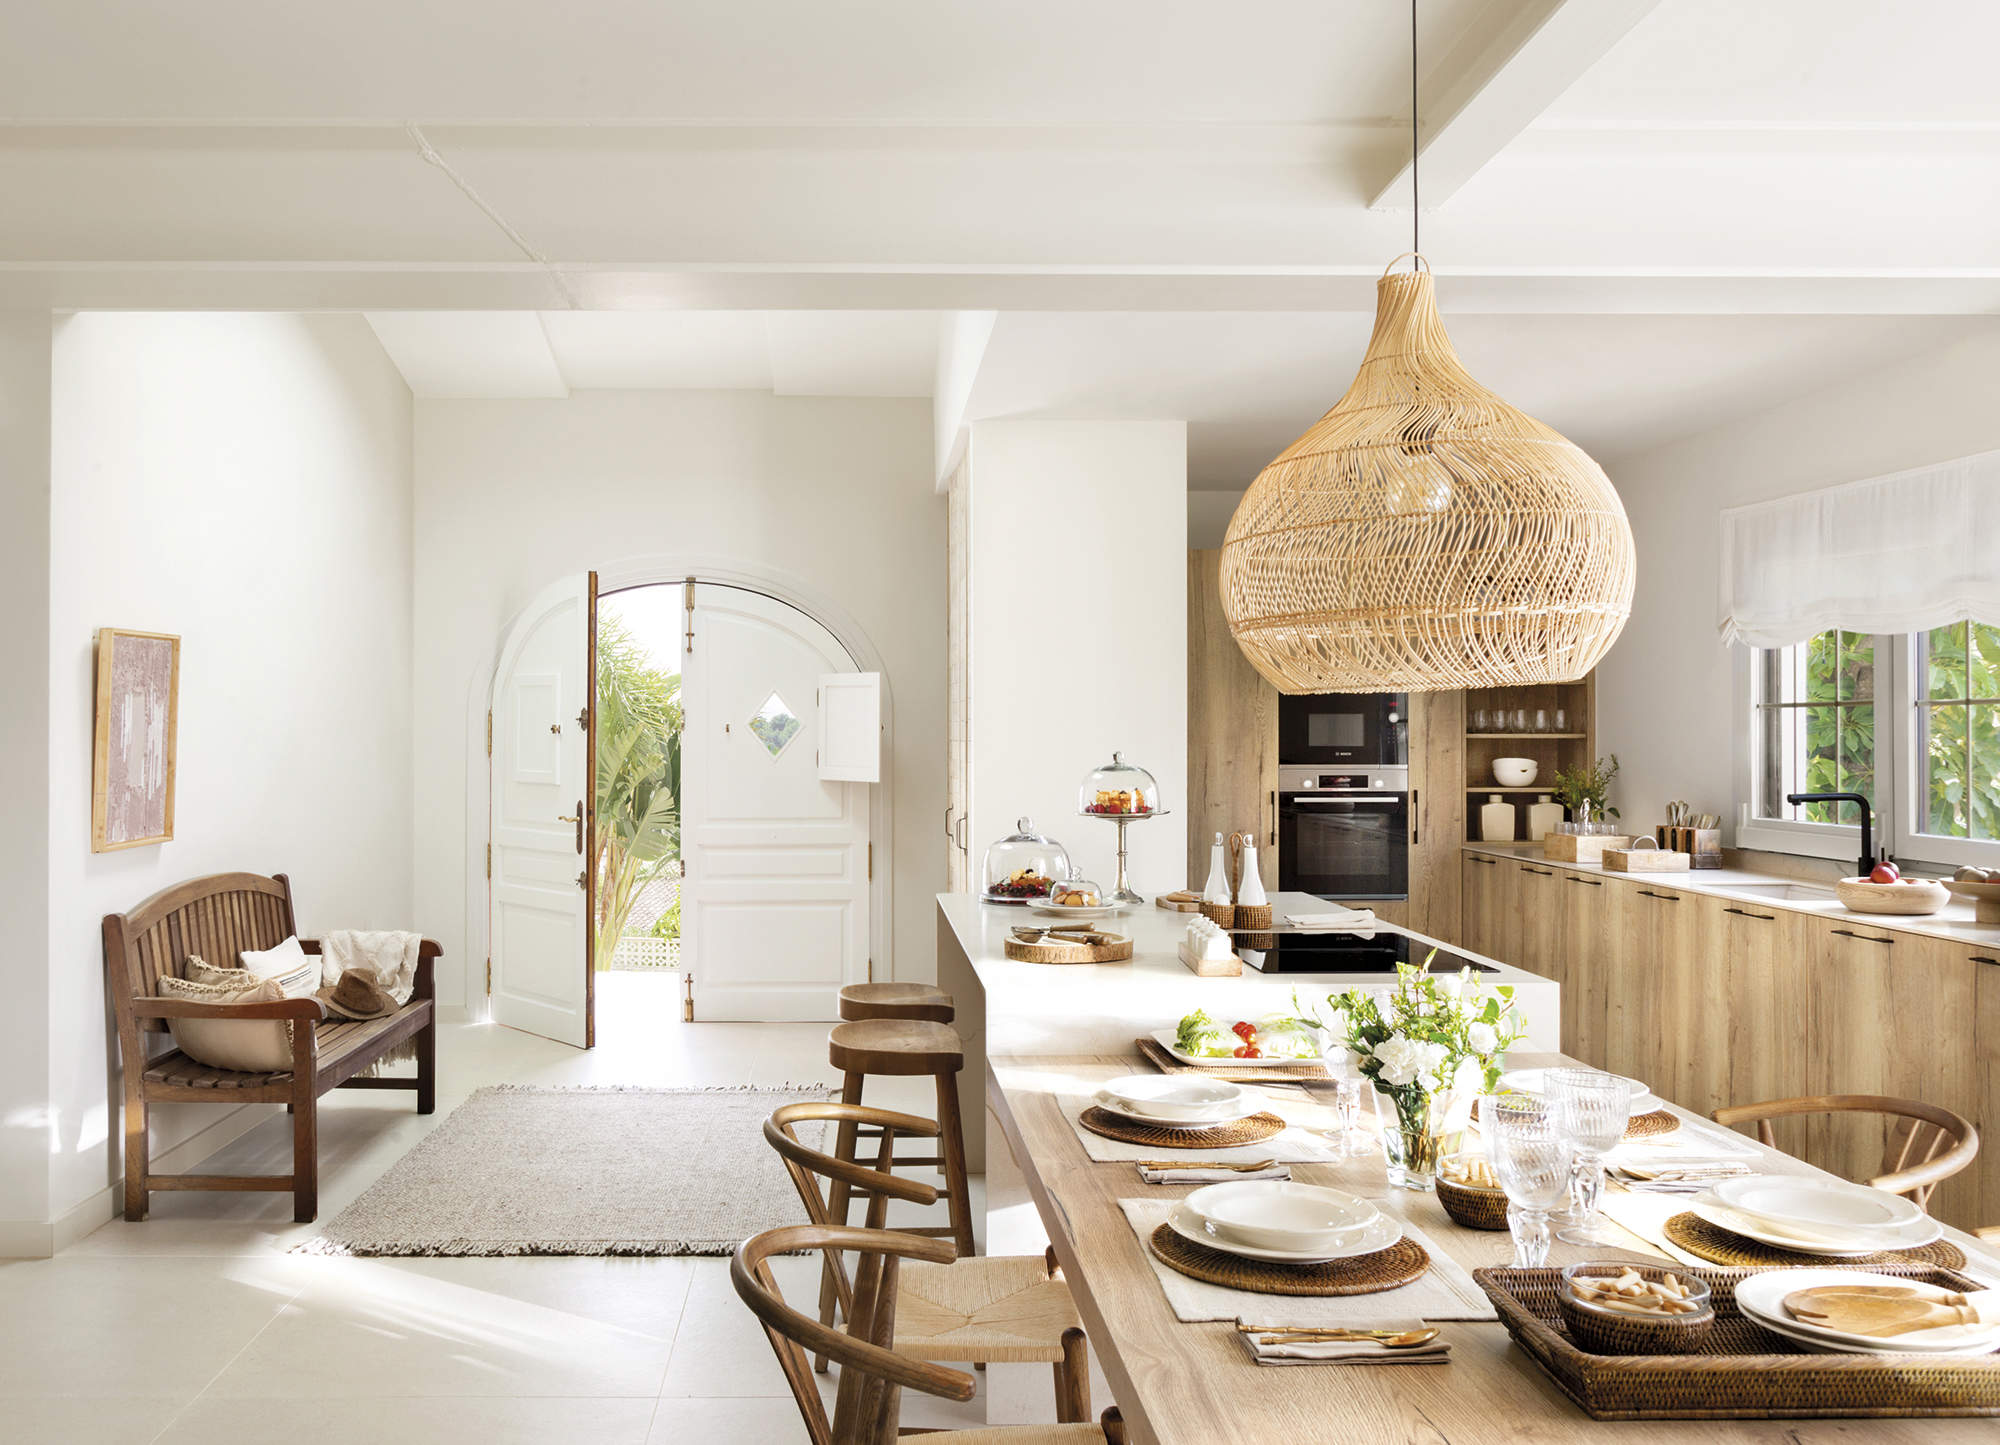 Cocina abierta con muebles de madera y mesa rústica MG 1731 1